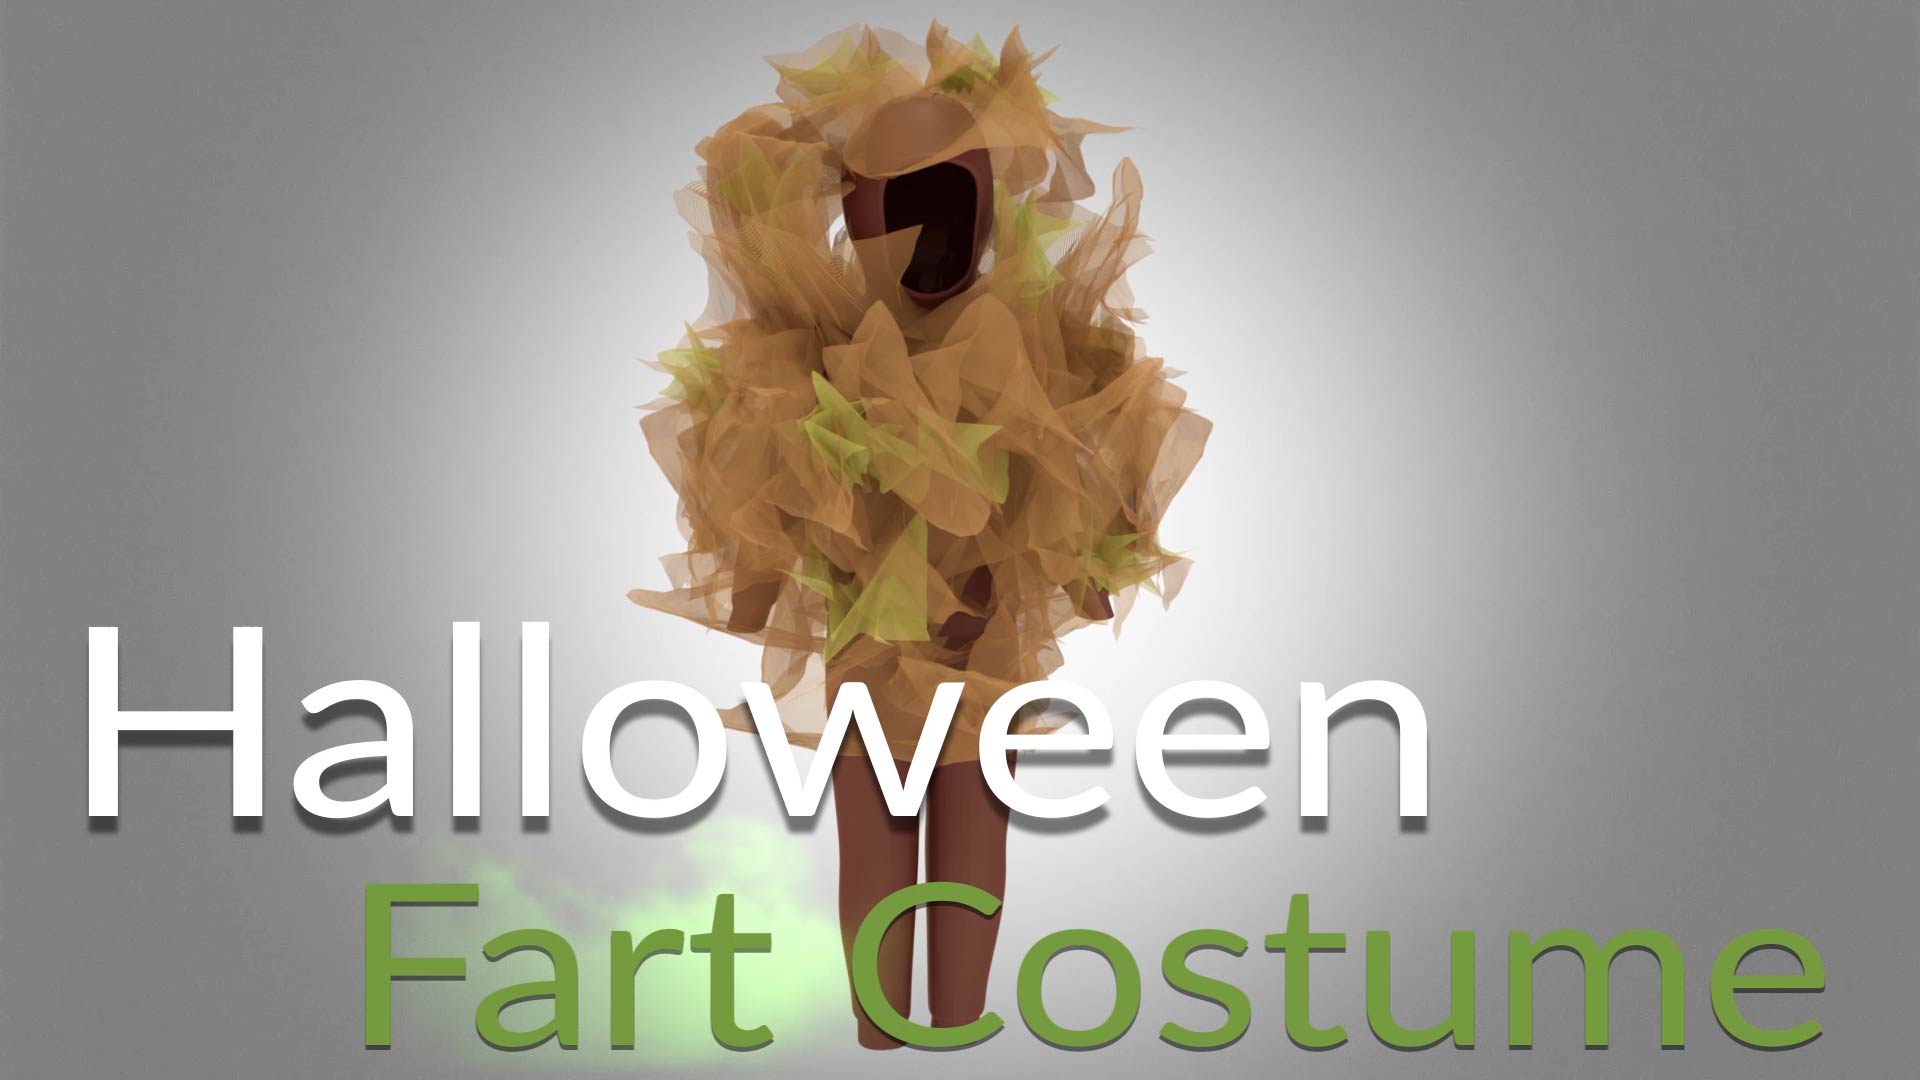 Adult fart costume